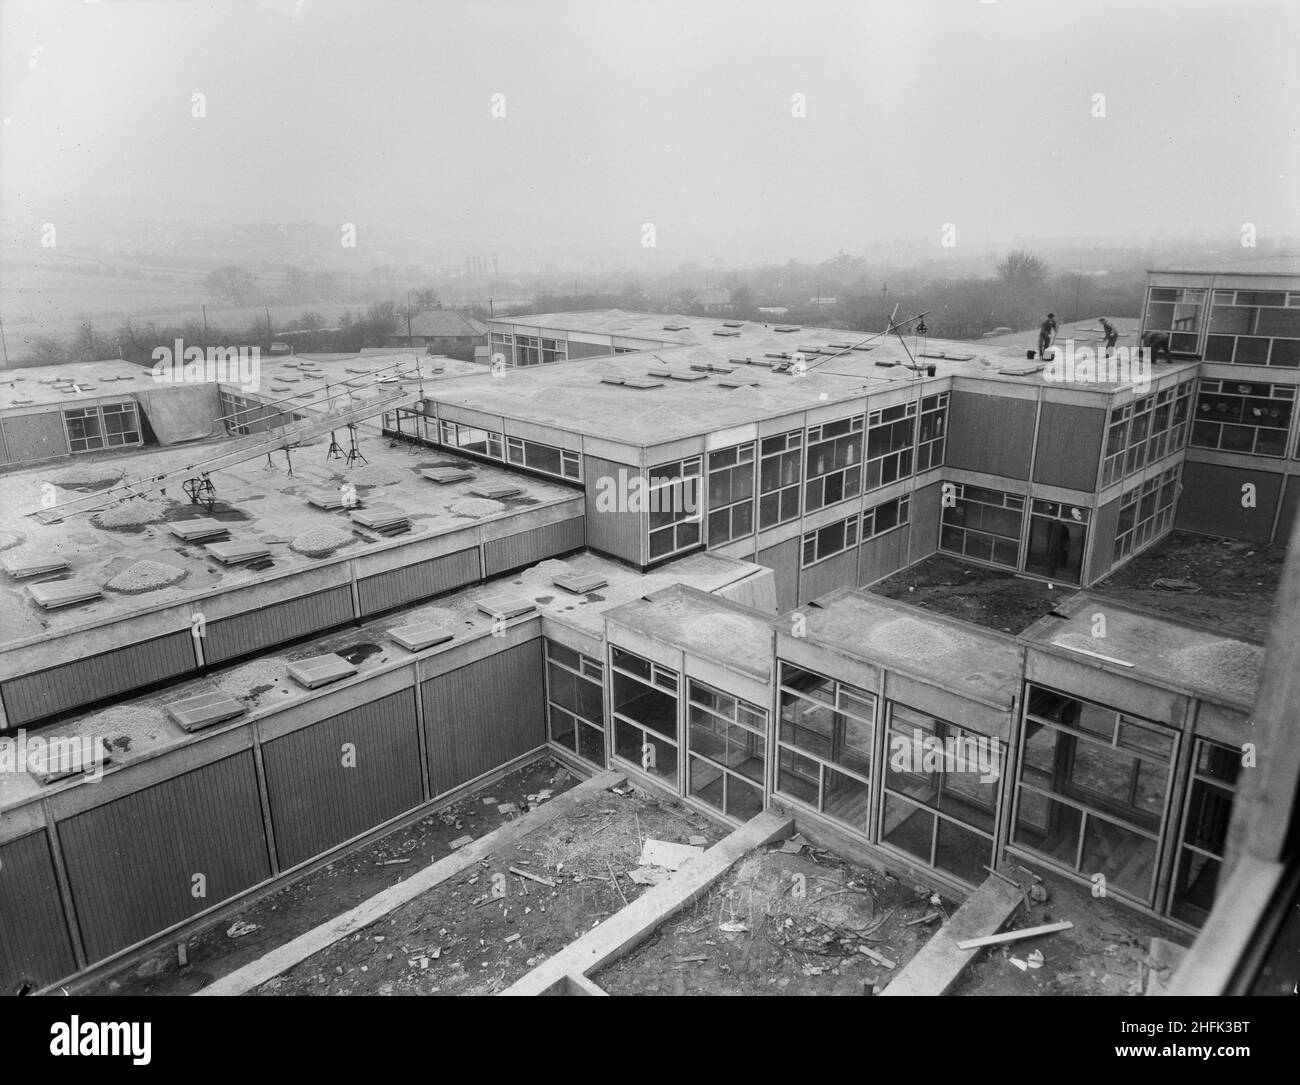 County High School, Gedling Road, Arnold, Gedling, Notinghamshire,23/02/1959.Vue du sud-ouest depuis une fenêtre supérieure dans le bloc scientifique de l'Arnold County High School, montrant des ouvriers qui répandaient du gravier sur les toits des bâtiments de l'école inférieure.Les travaux ont commencé sur le site en mars 1958 et les travaux de construction ont été achevés pour la nouvelle période scolaire en septembre 1959.L'école de grammaire co-éducative a accueilli 720 élèves.Au milieu de 1960s, une autre école a été construite à proximité et, en 1974, les deux ont été fusionnées en une école complète.Les bâtiments scolaires construits par Laing ont finalement été démolis en 2017. Banque D'Images